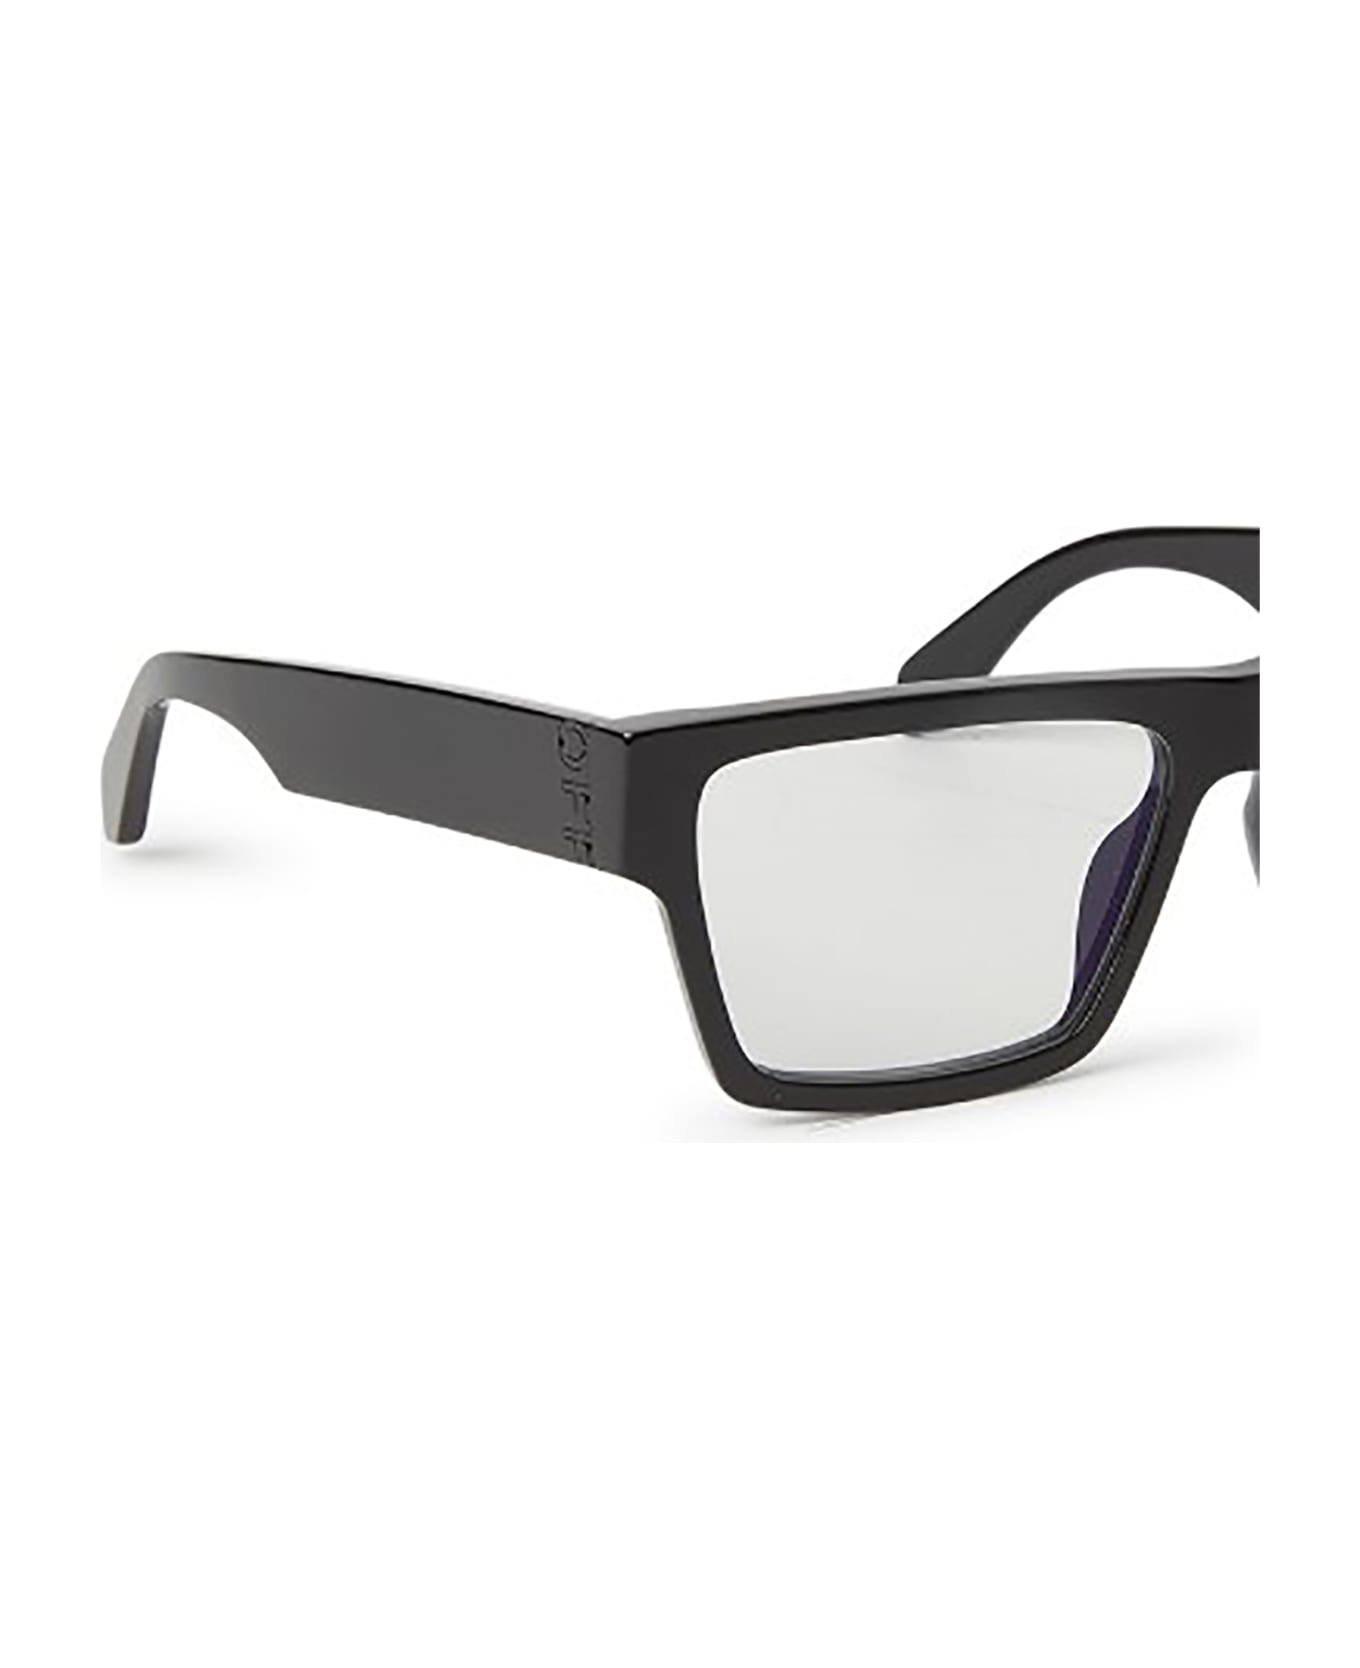 Off-White OERJ046 STYLE 46 Eyewear - Black アイウェア